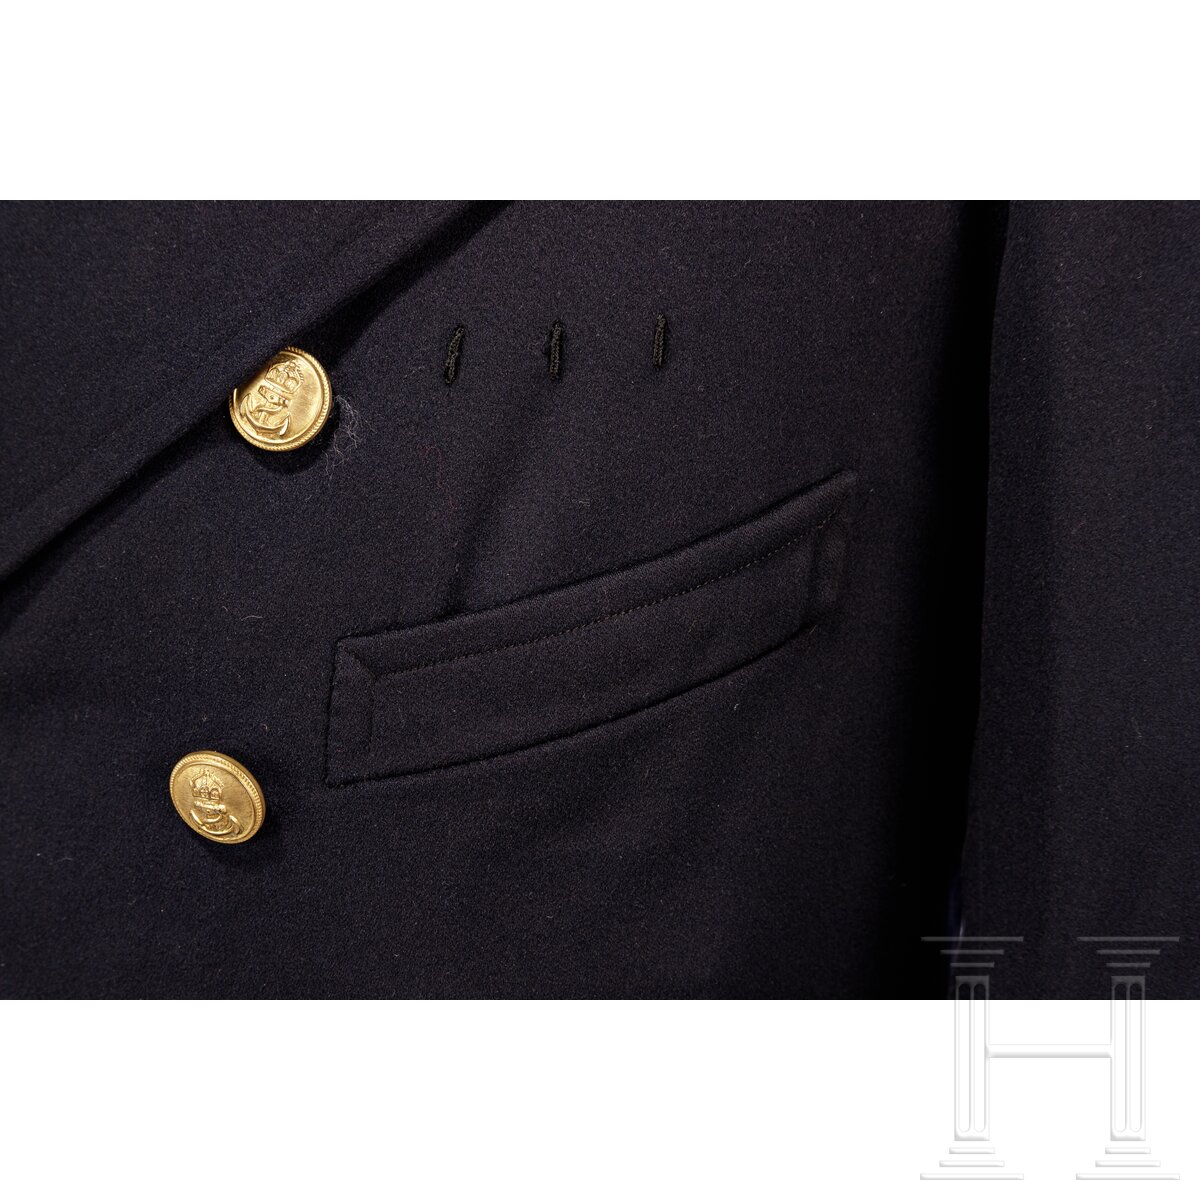 Uniformensemble für einen Leutnant der Kaiserlichen Marine - Image 5 of 10